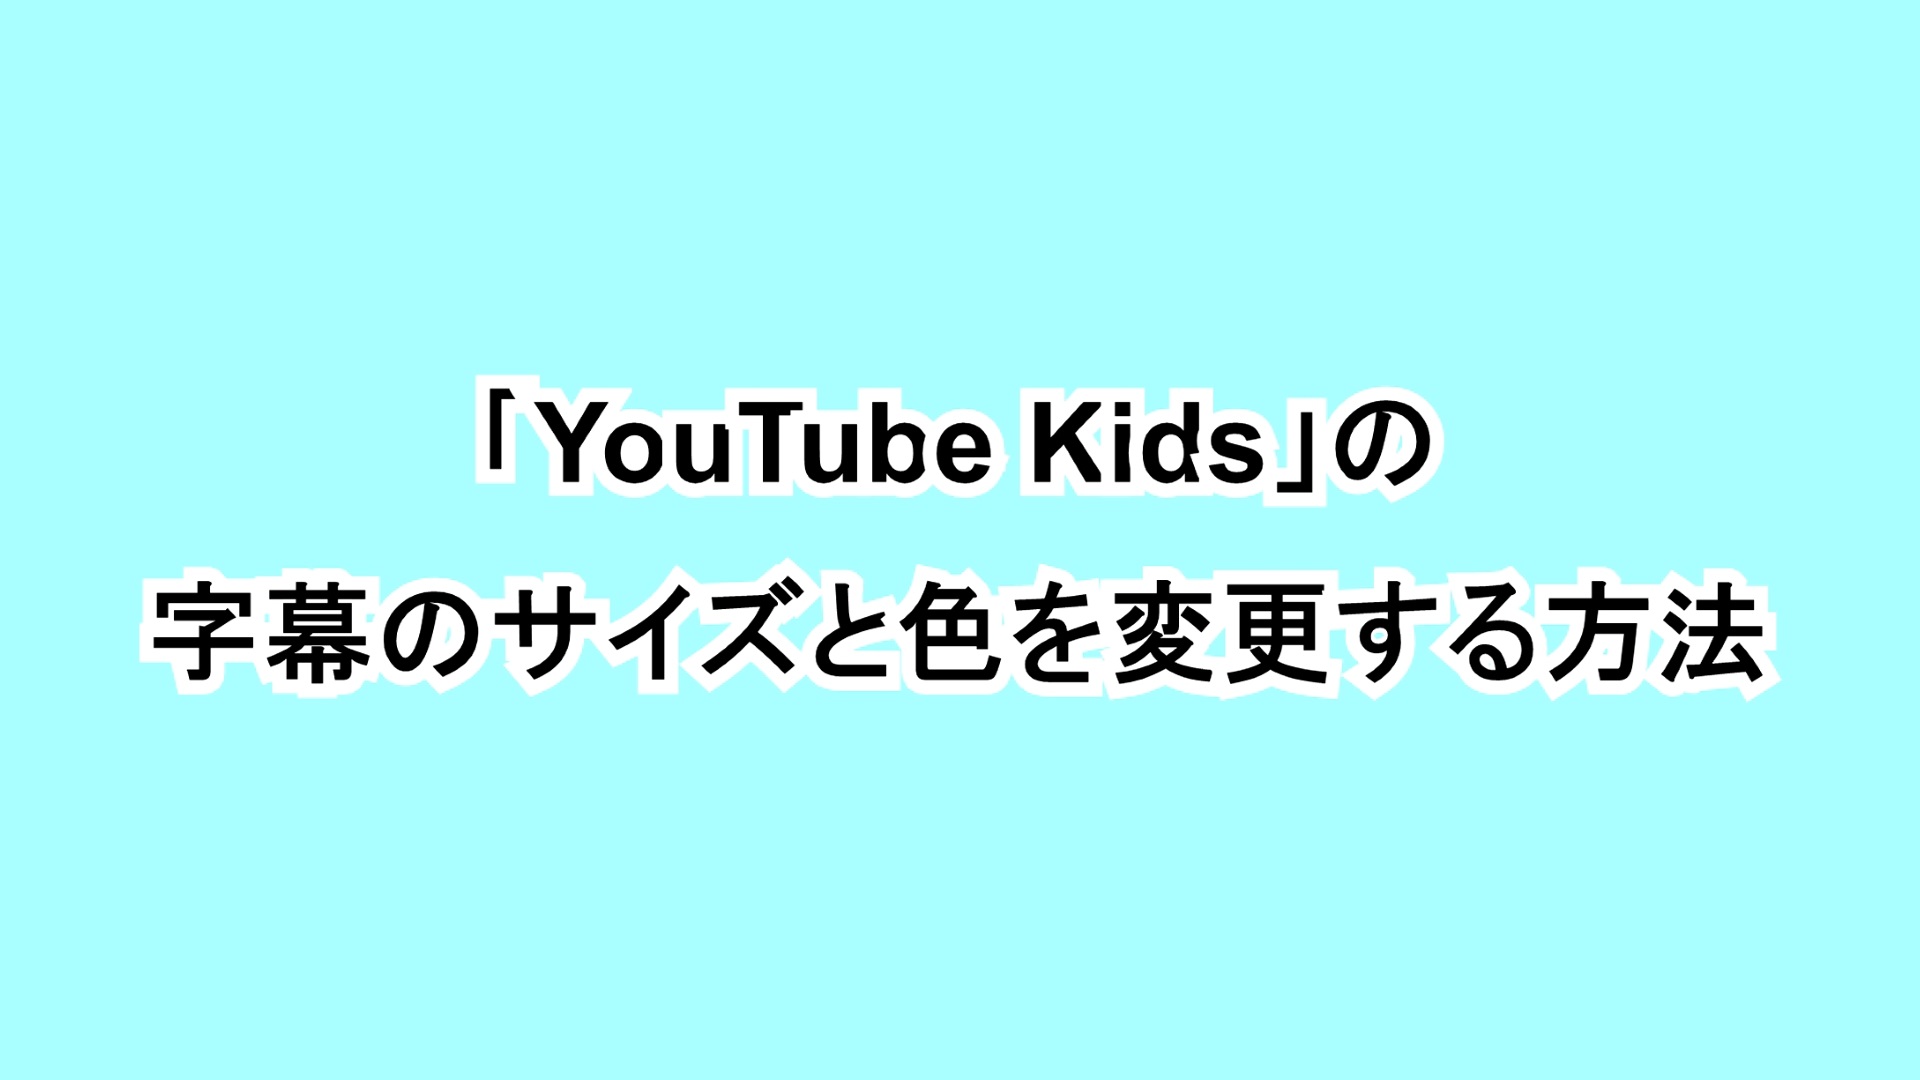 「YouTube Kids」の字幕のサイズと色を変更する方法